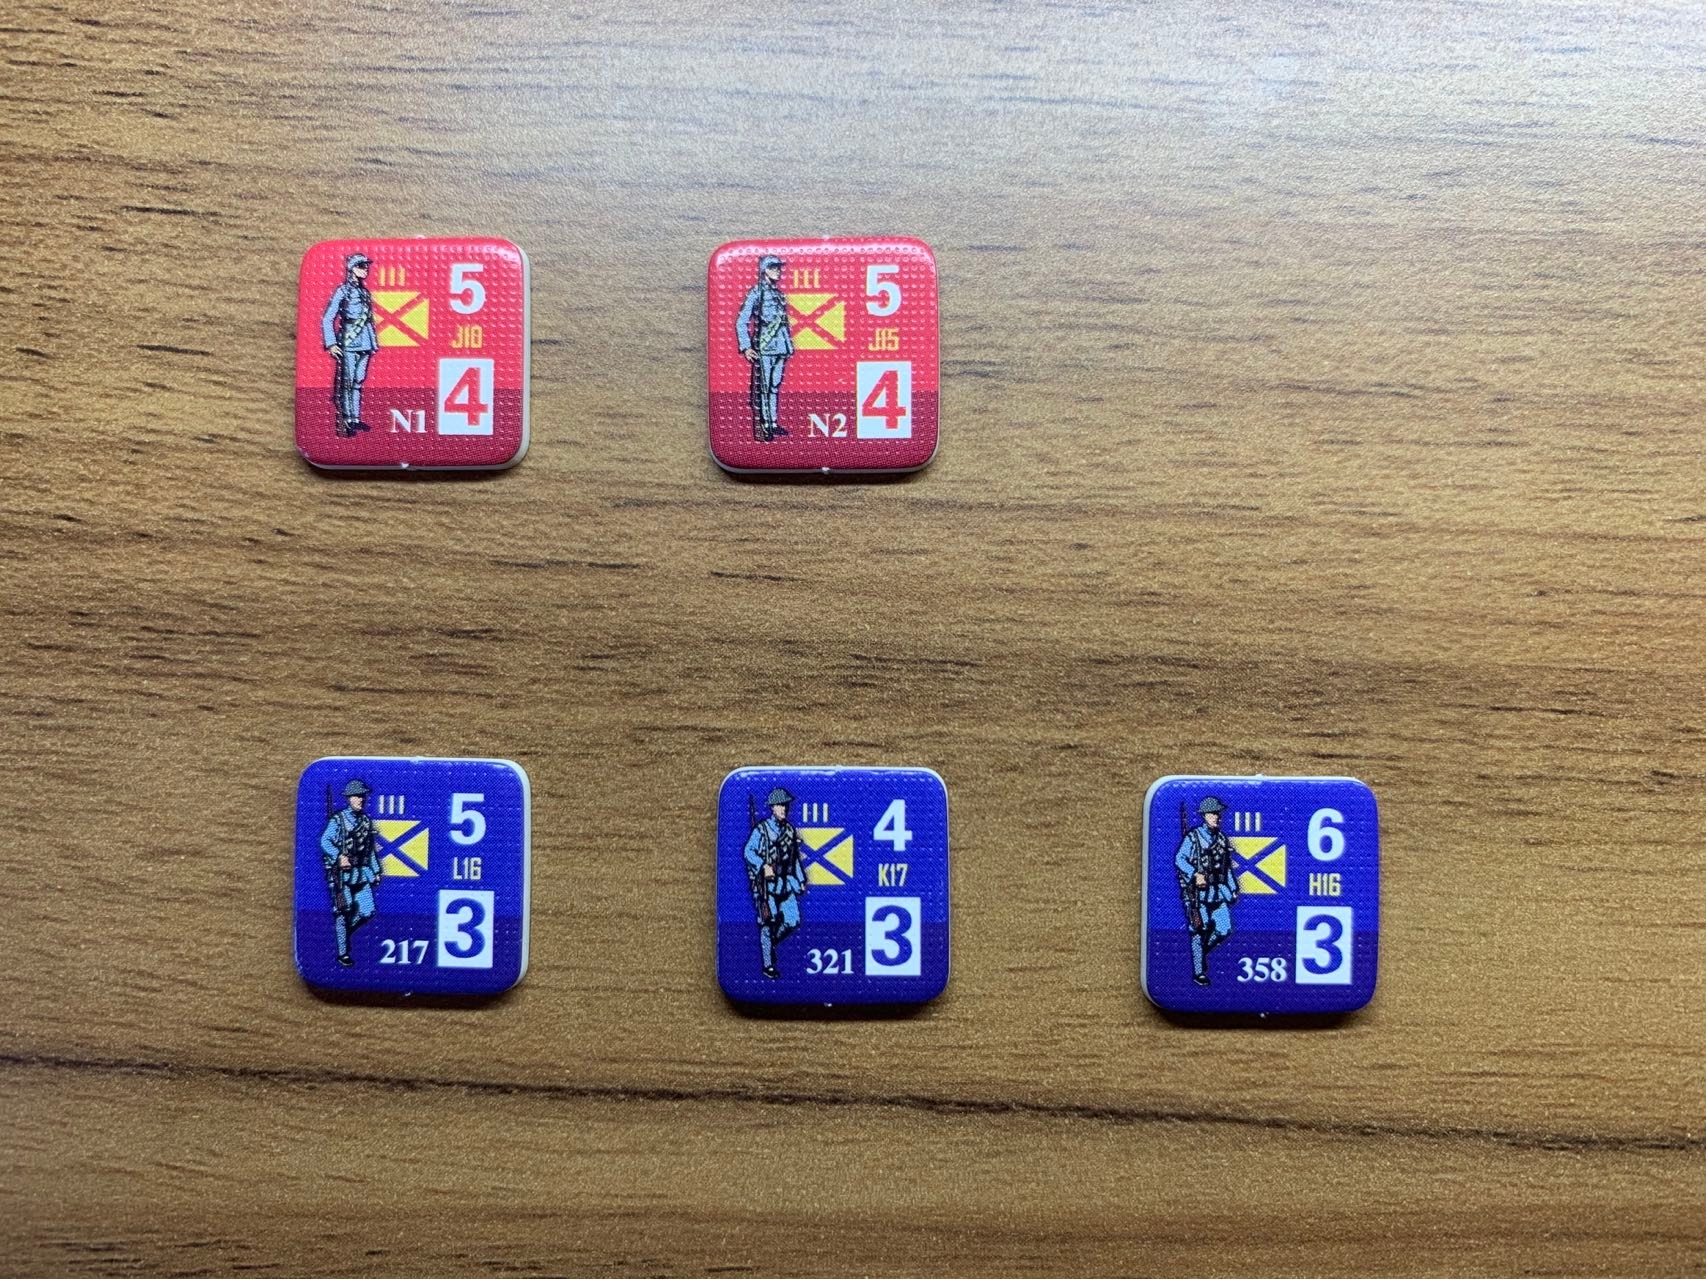 游戏中用来表示国共双方正规军的算子，下方三枚为国军部队，玩家可以通过算子下部的番号确认哪一只部队是“358团”